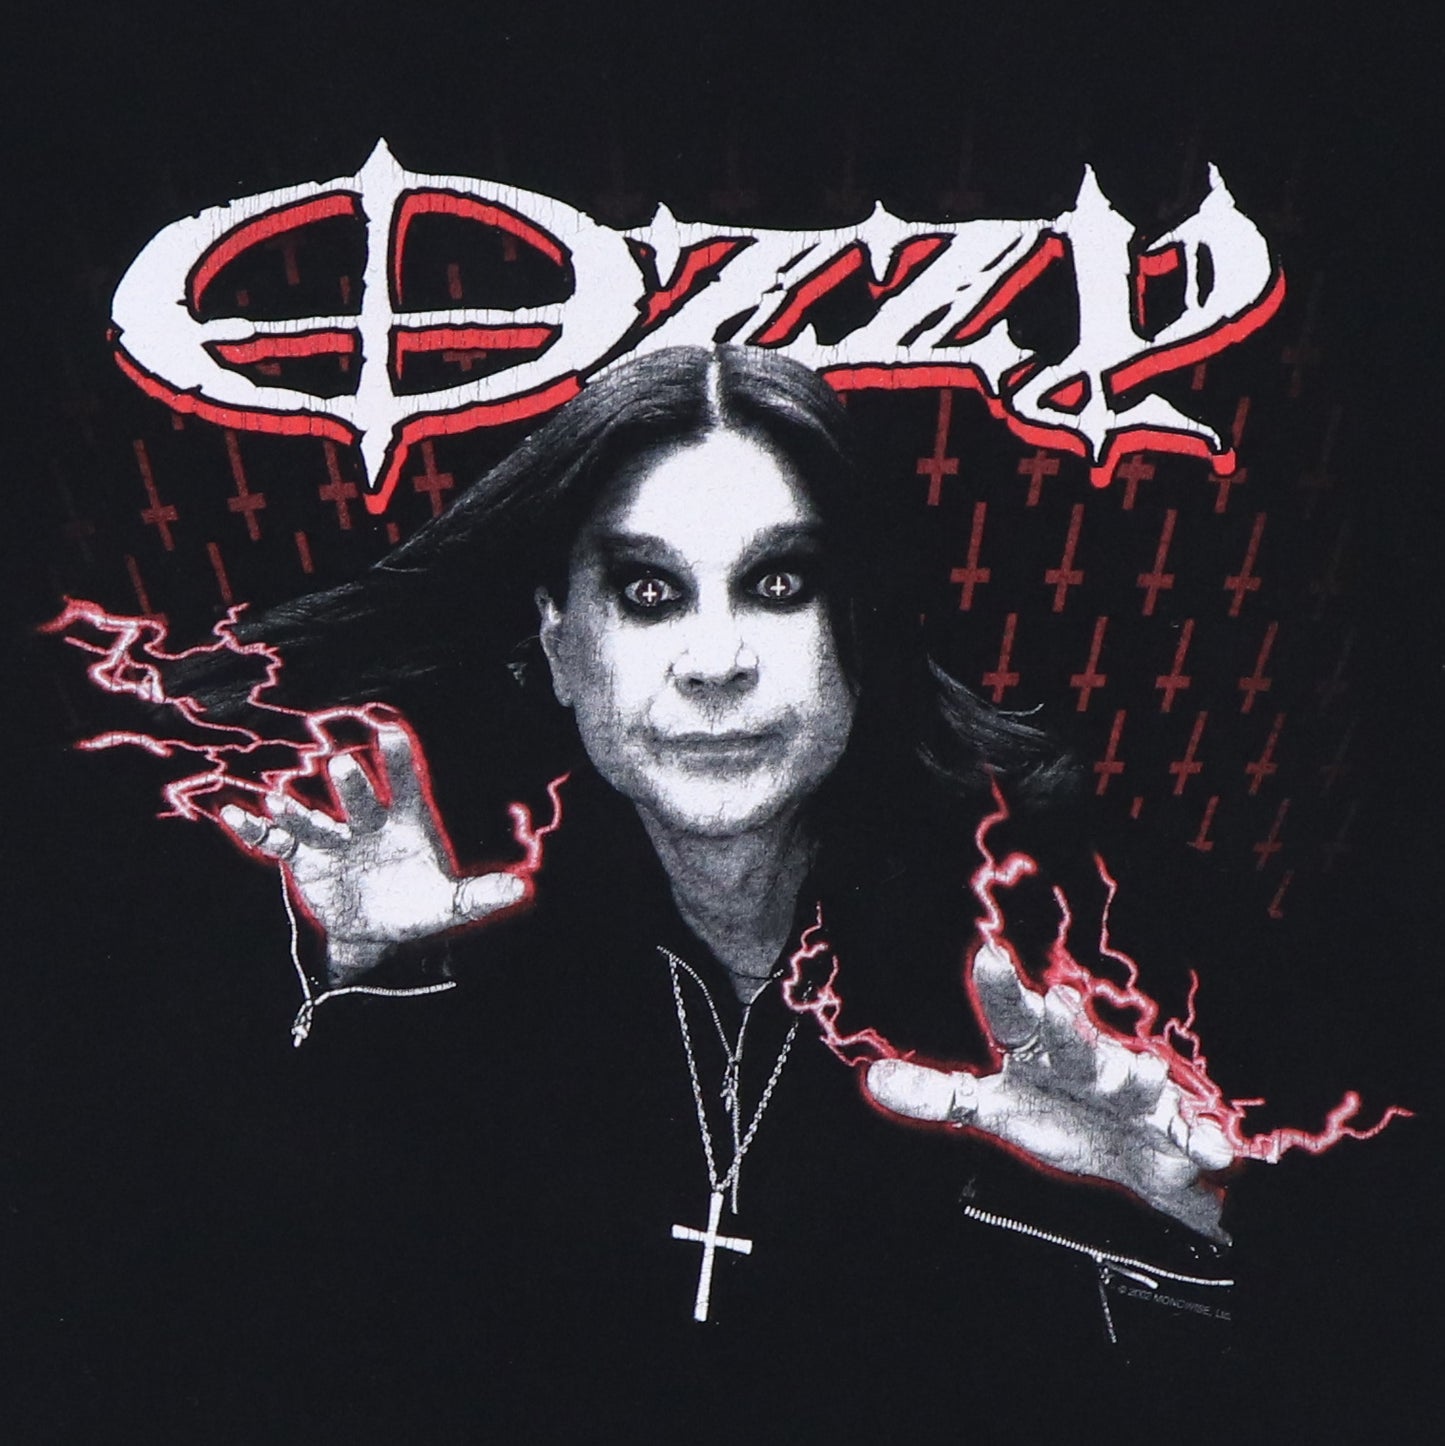 2002 Ozzy Osbourne Shirt